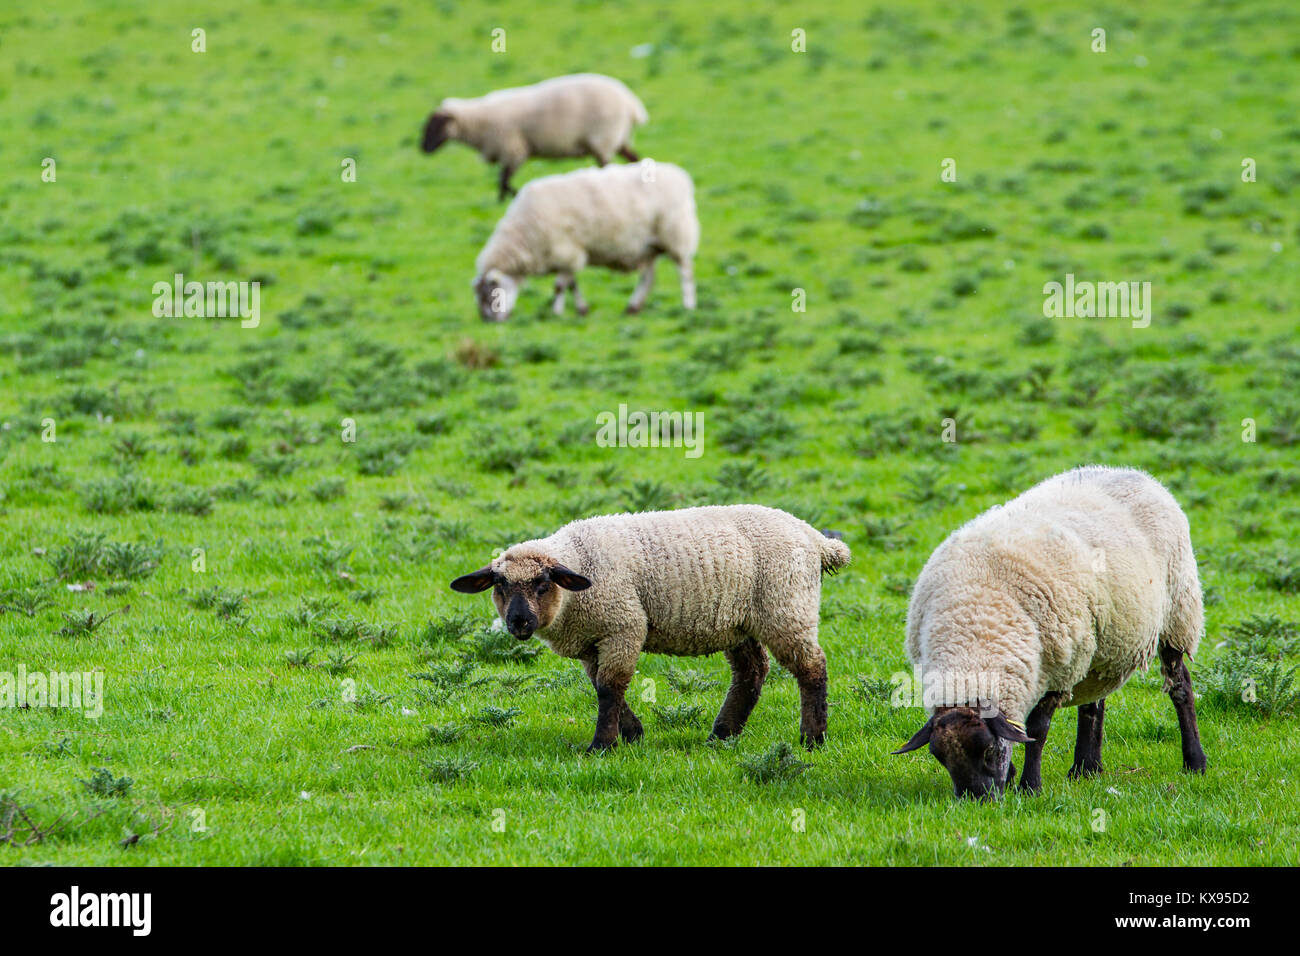 sheeps, Ireland, Europe Stock Photo